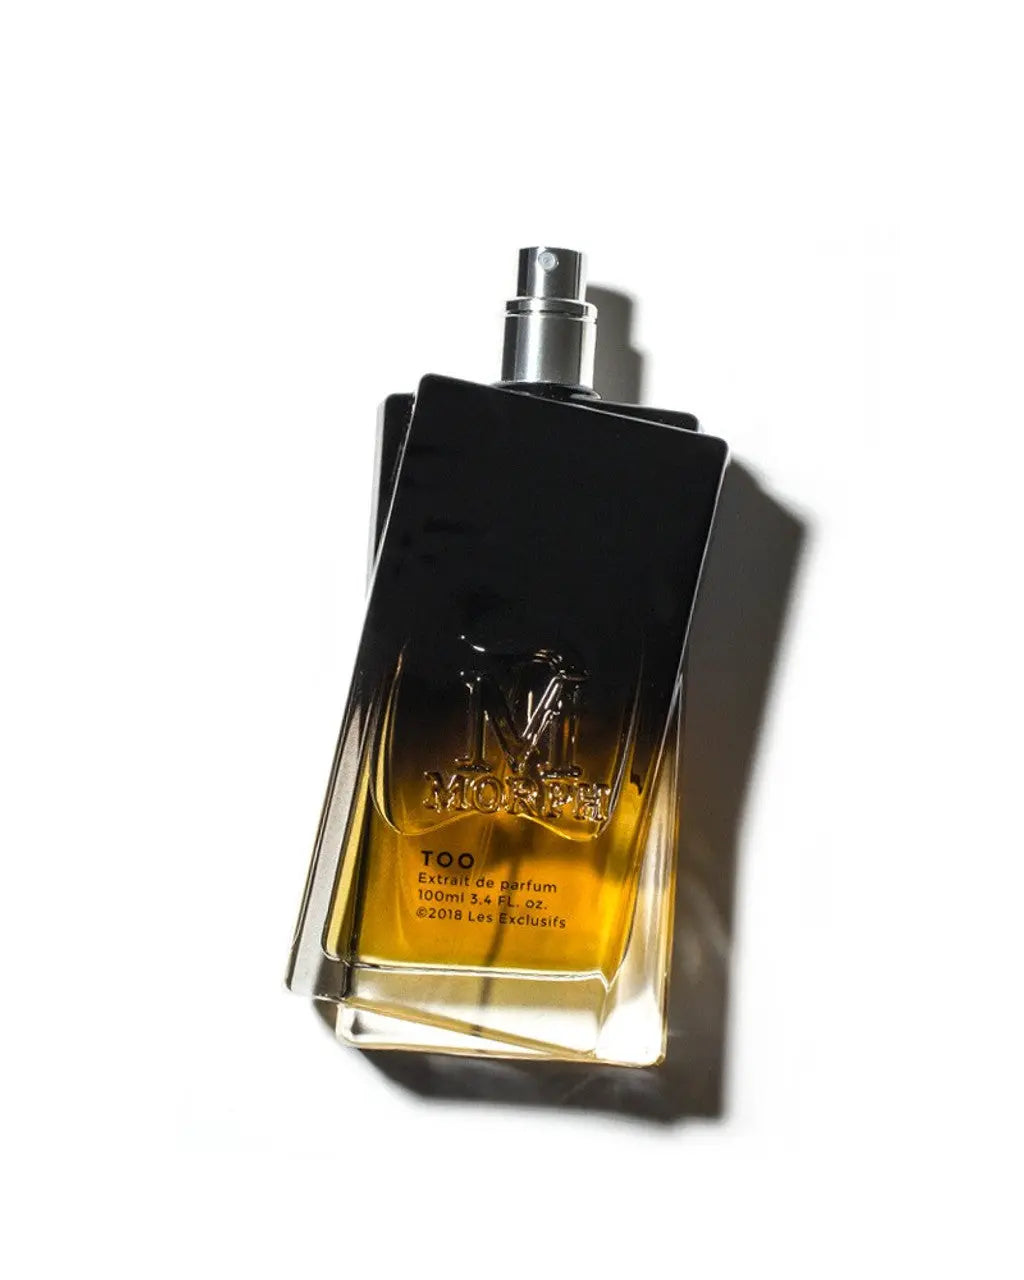 parfum fles morph too schaduw studio aromatic